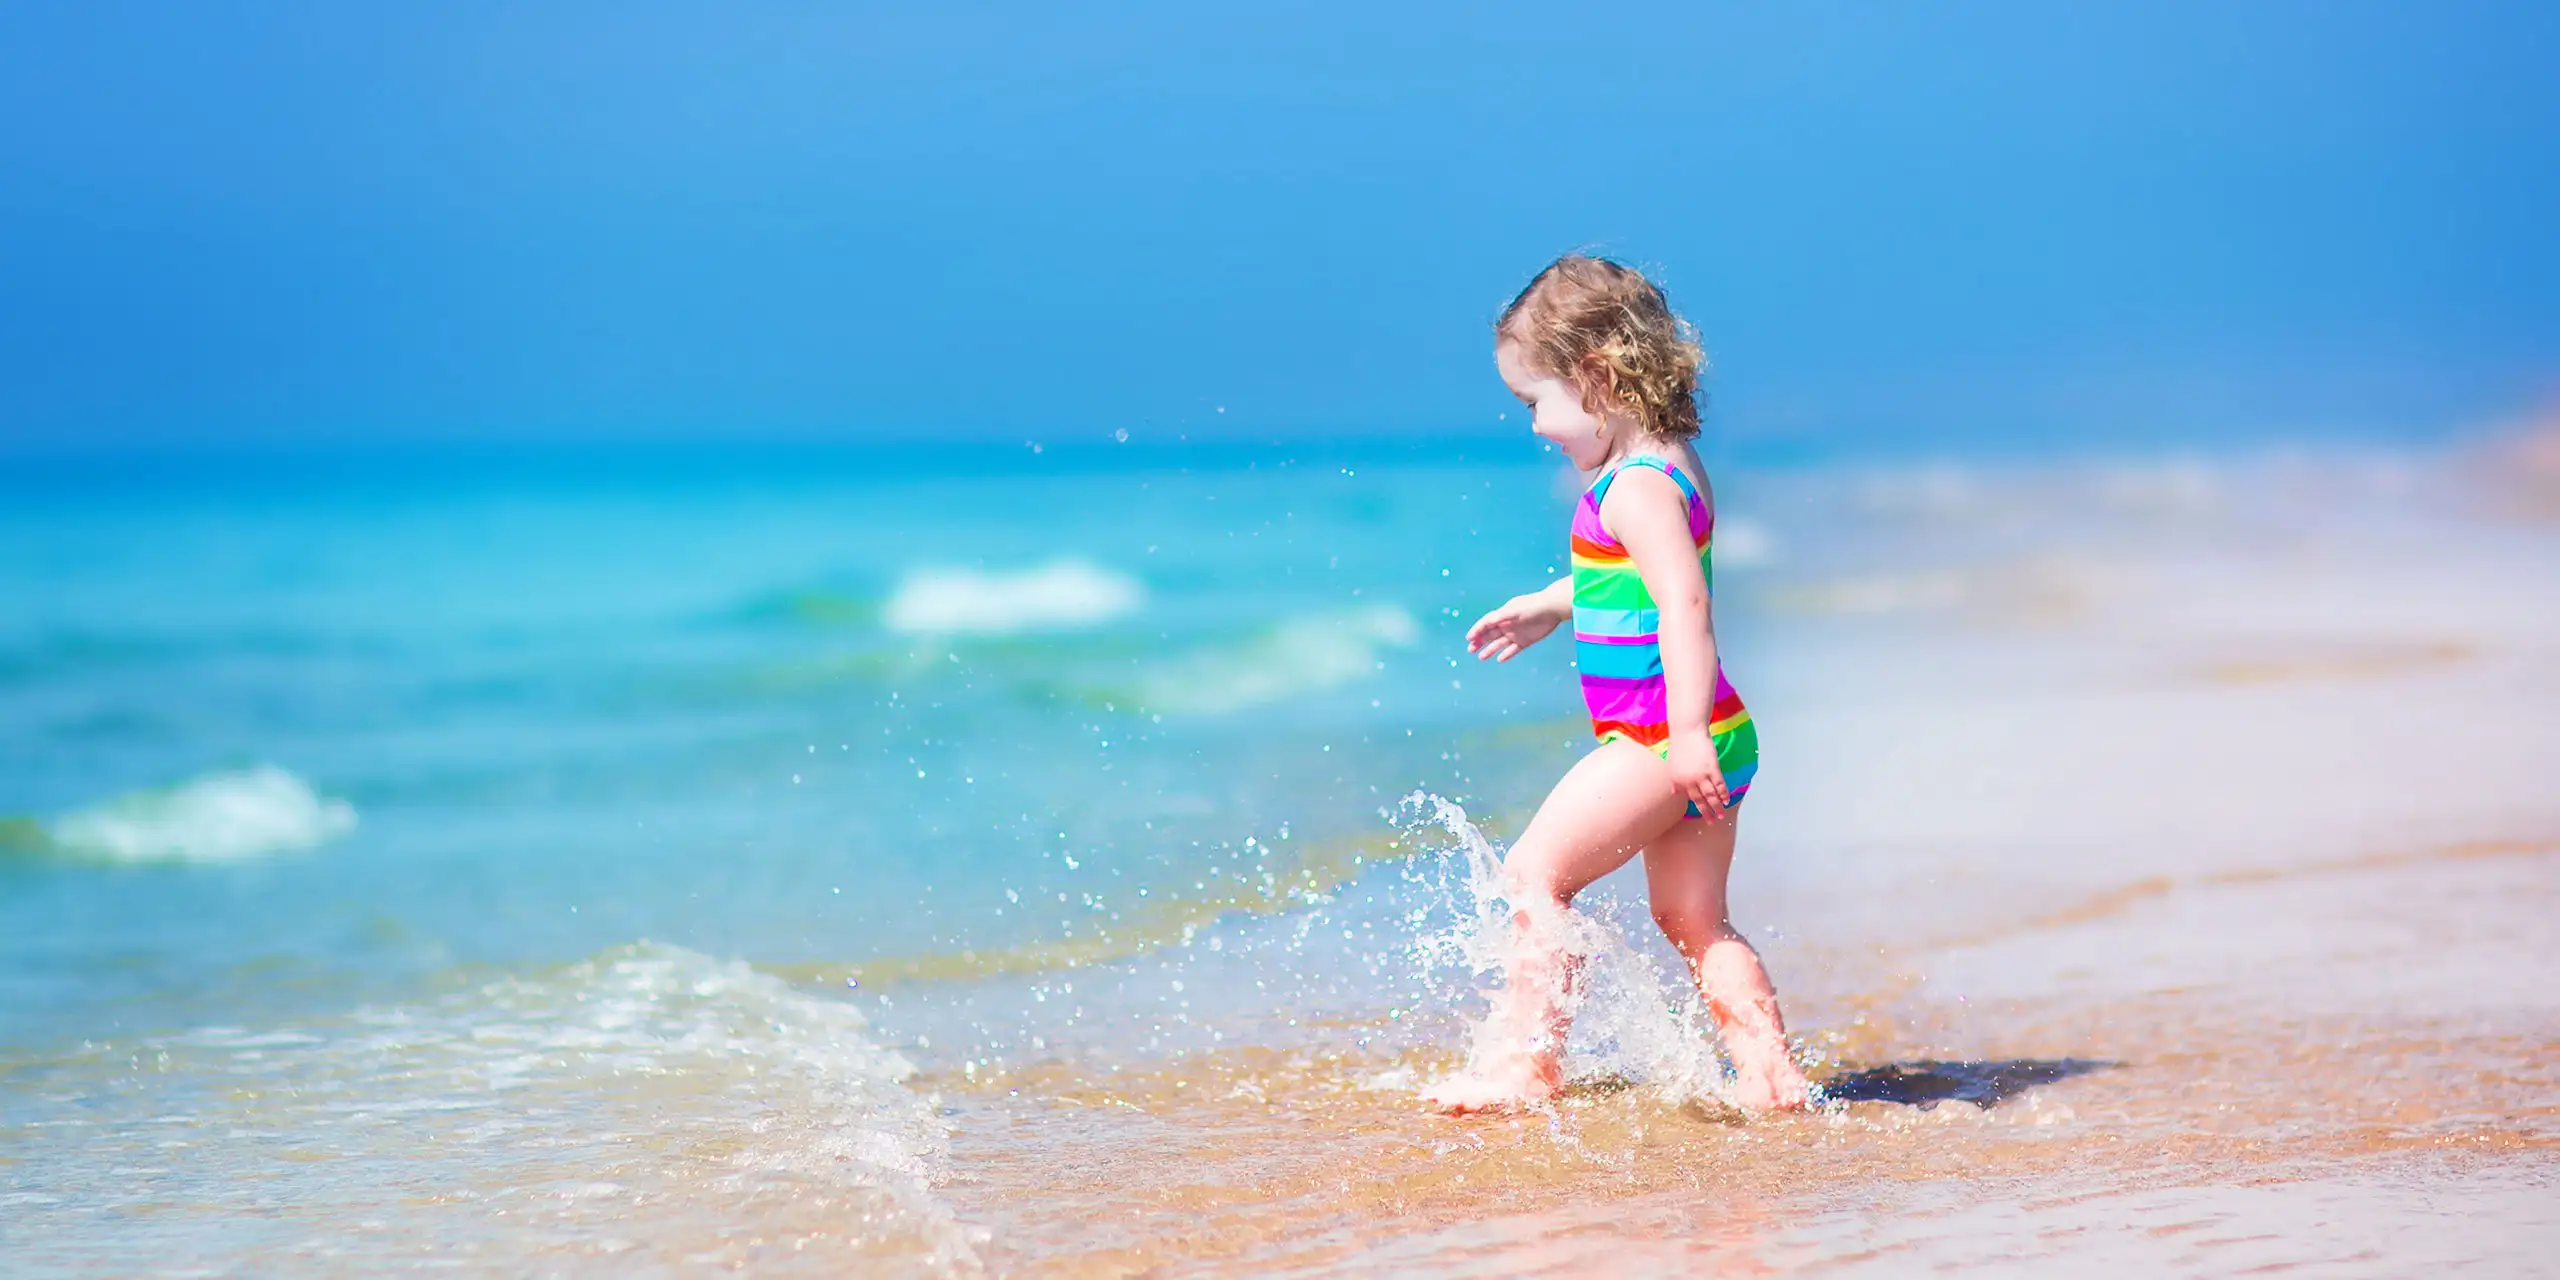 Toddler on the Beach; Courtesy of FamVeld/Shutterstock.com